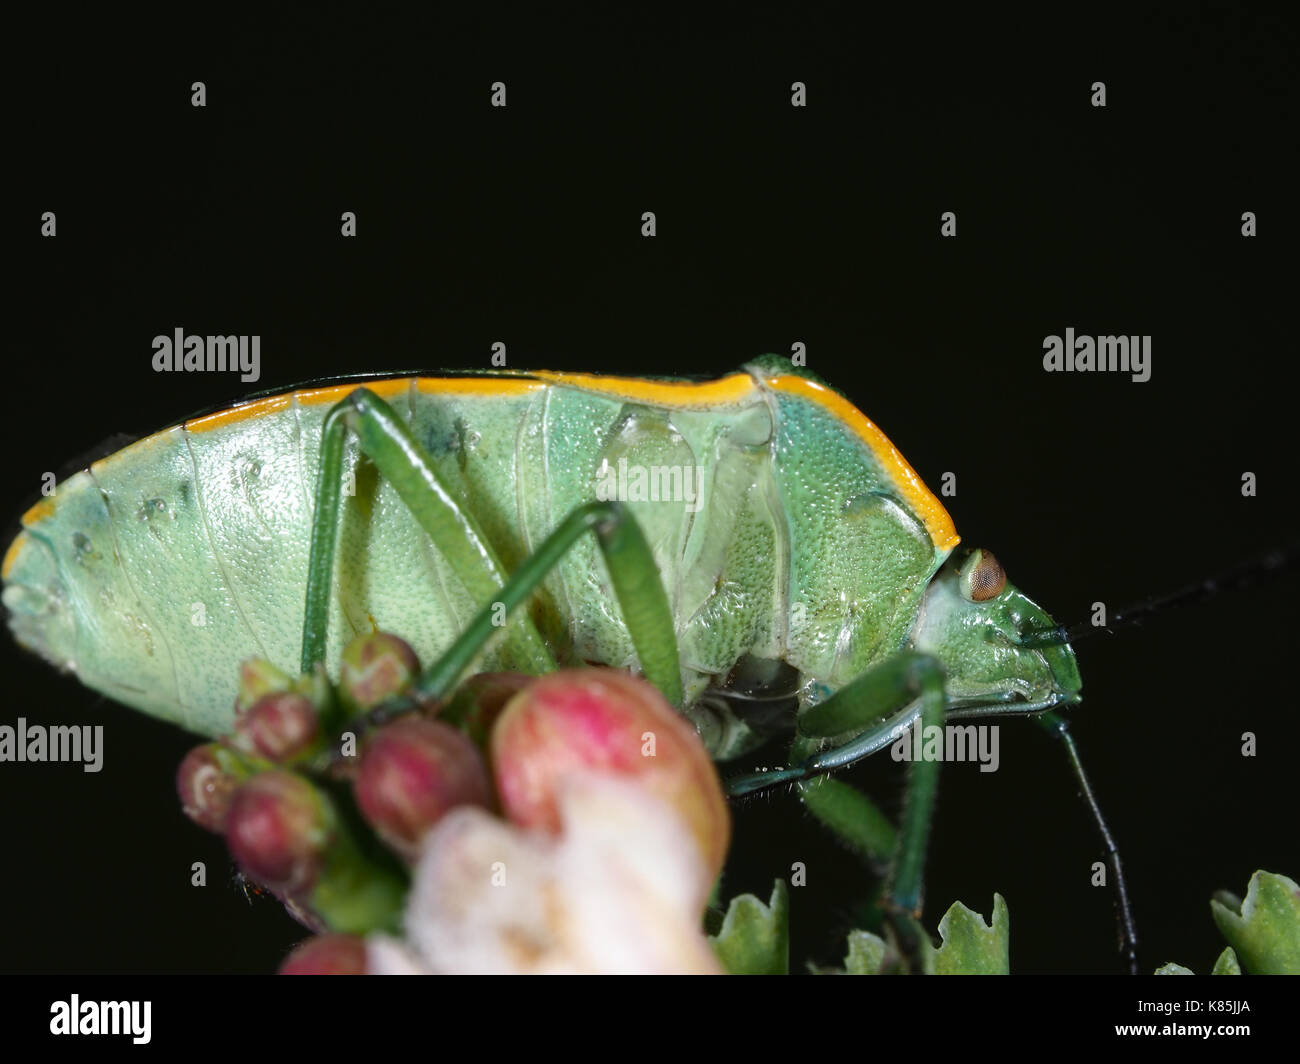 Green stink bug (Chinavia hilaris) assis sur une fleur, dessous vue Banque D'Images